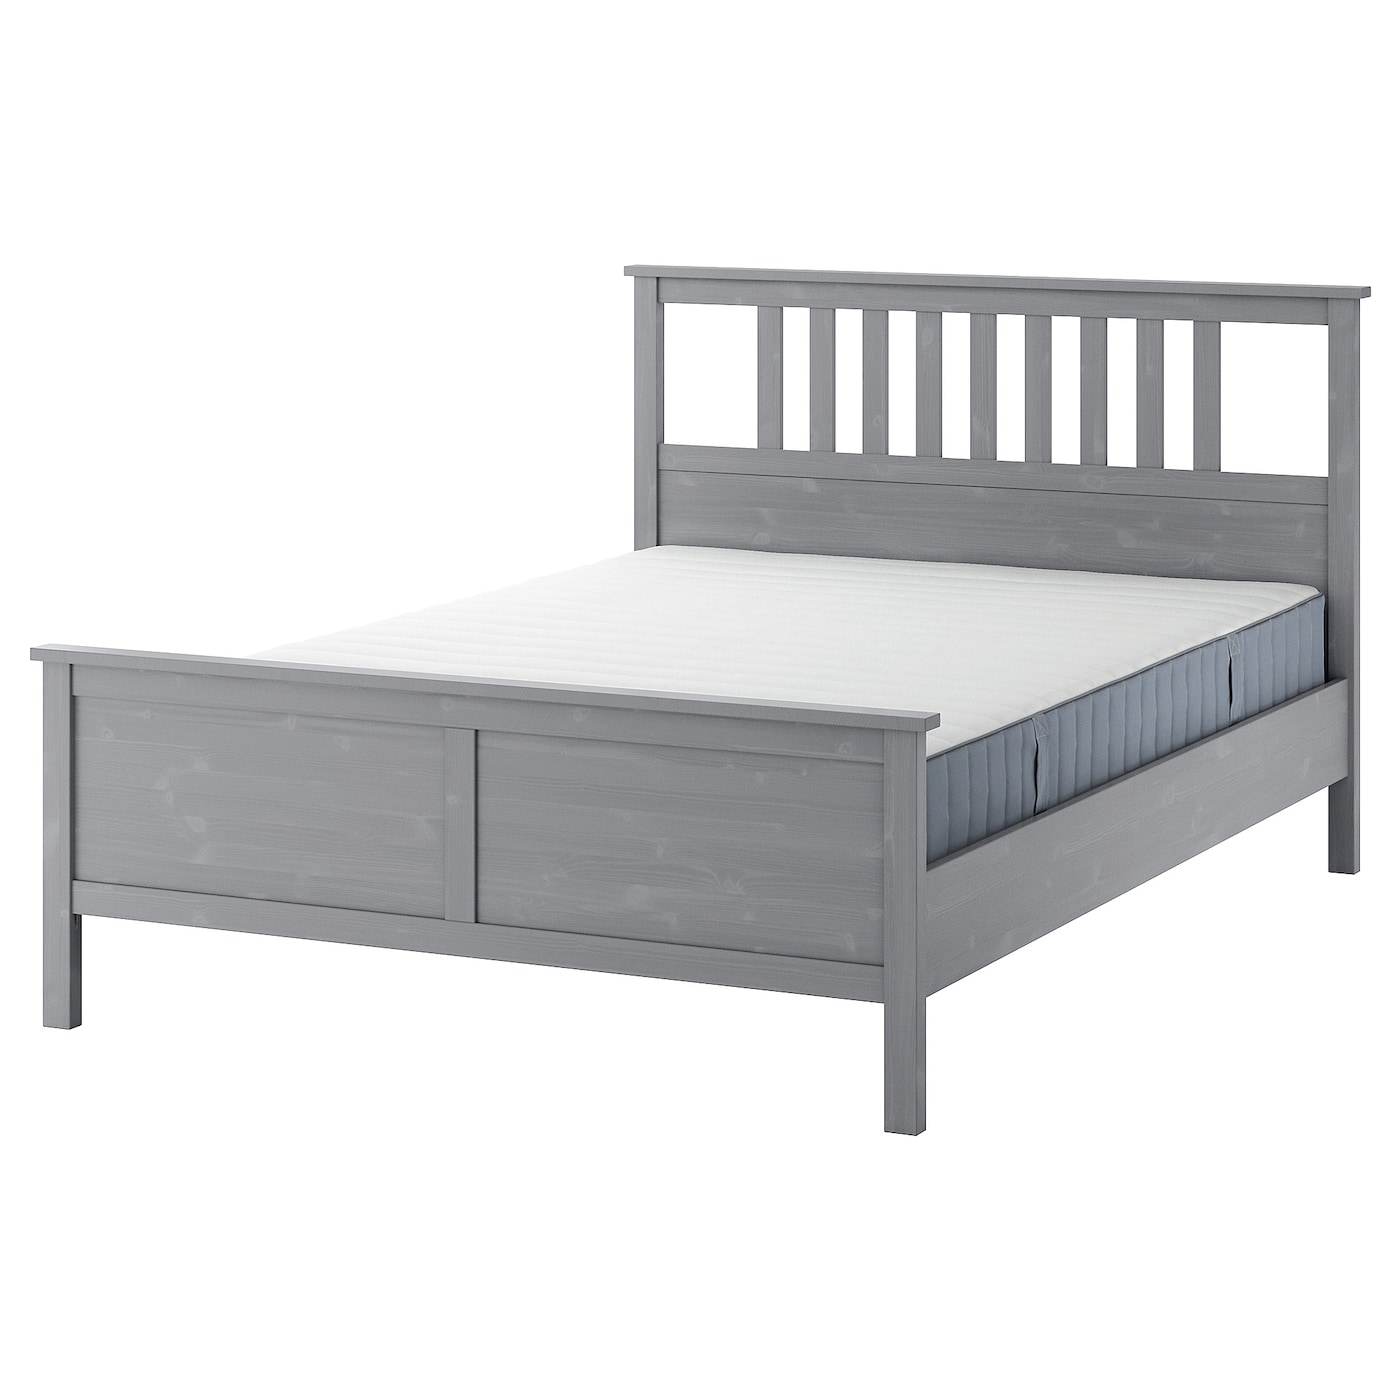 Кровать - IKEA HEMNES, 200х160 см, матрас средне-жесткий, серый, ХЕМНЕС ИКЕА